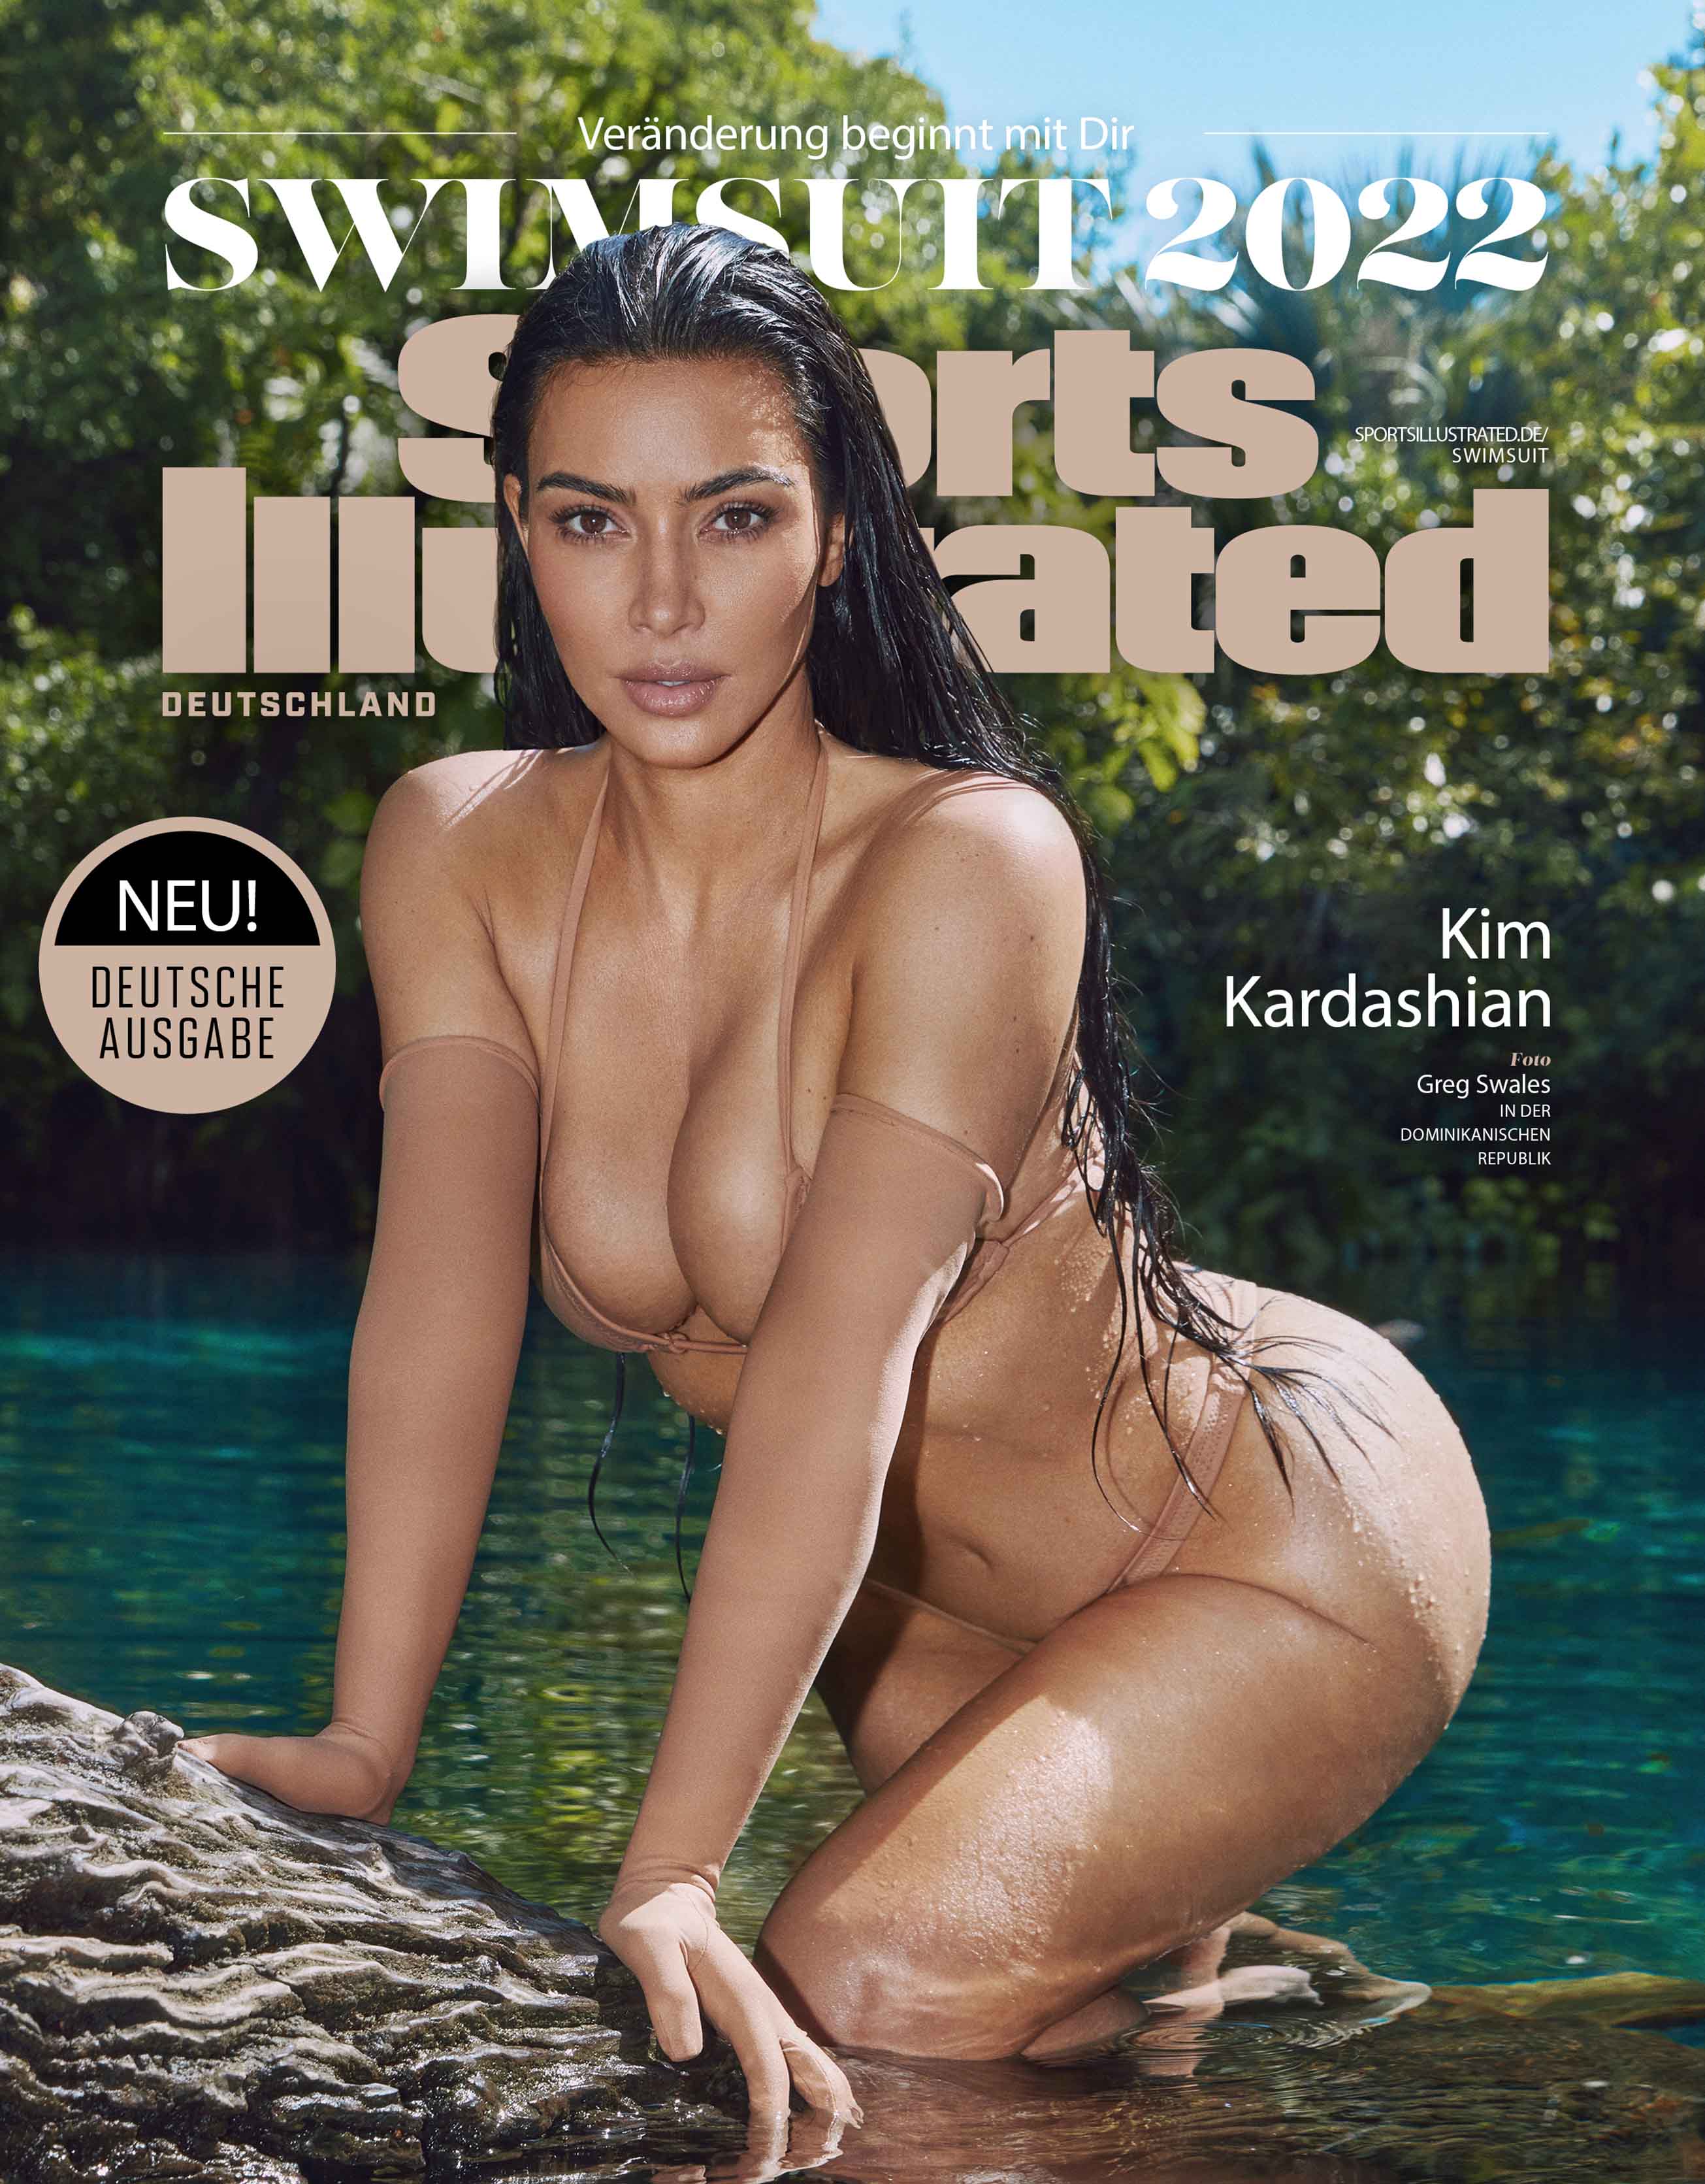 Ab dem 13.6. auch als exklusive deutsche Ausgabe erhältlich: Die Swimsuit-Ausgabe von Sports Illustrated mit Cover Model Kim Kardashian